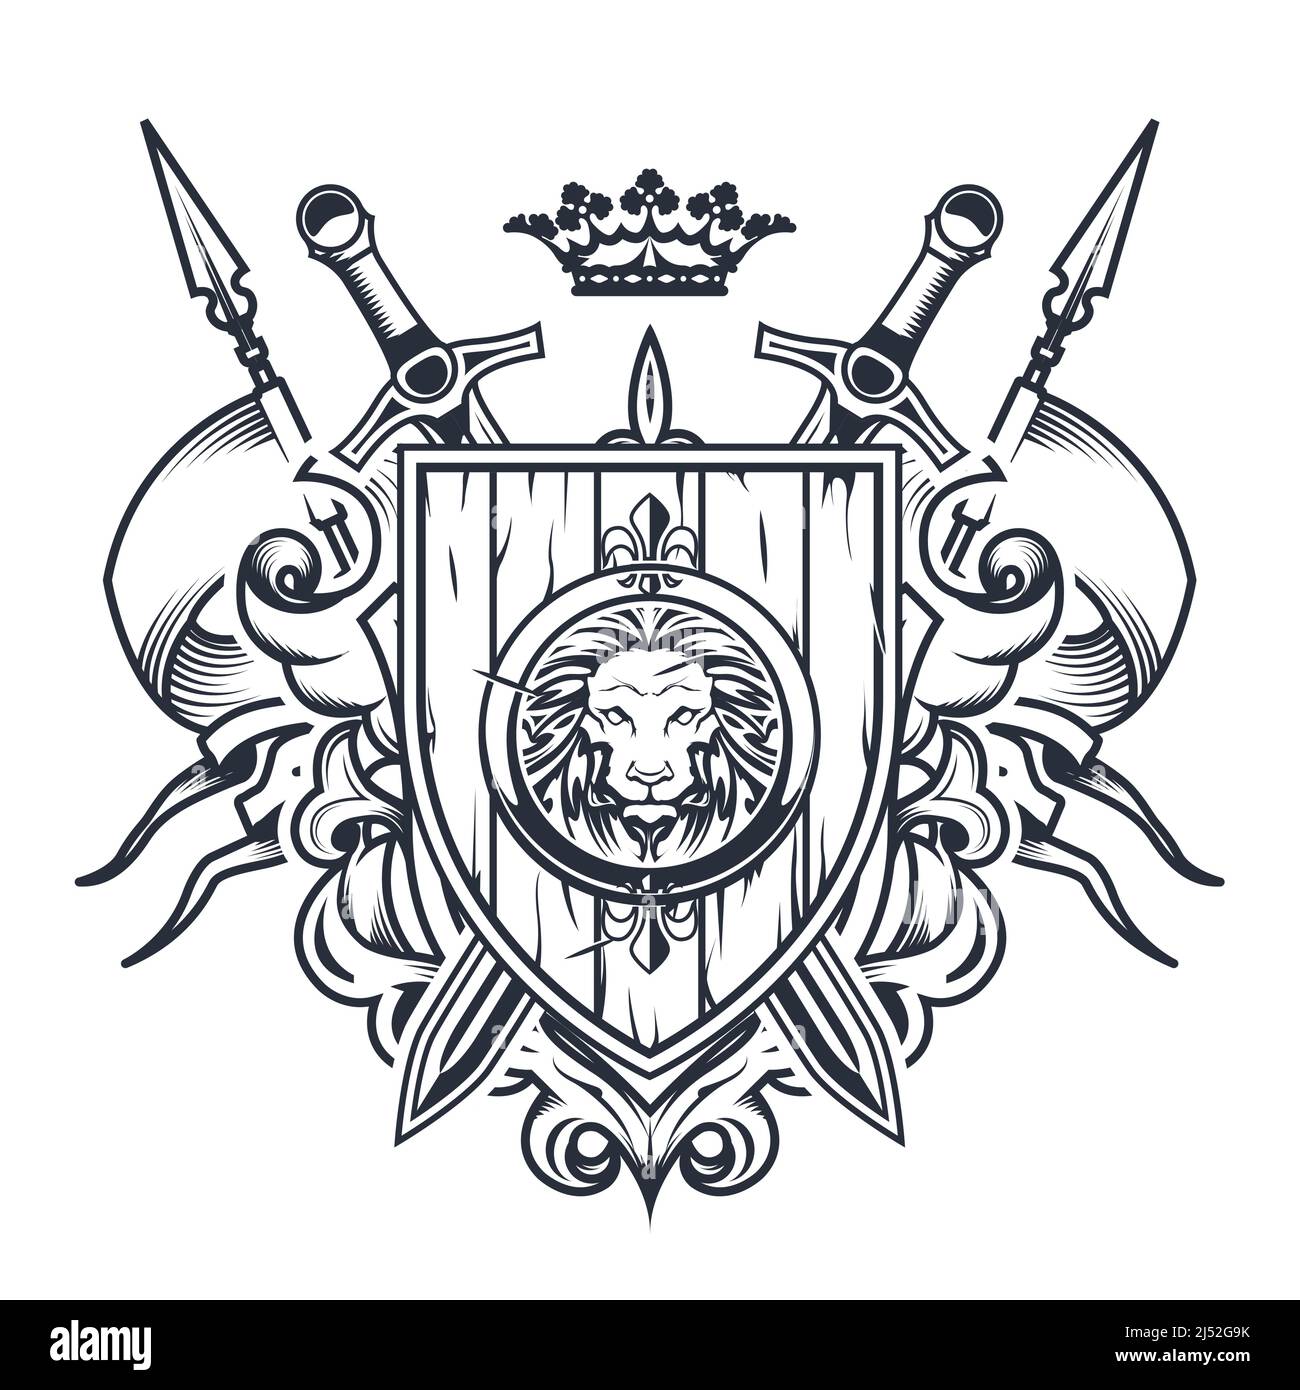 Sontuoso stemma con vecchio scudo di legno, spade e corona, cresta del cavaliere, emblema araldico o blazon reale, vettore Illustrazione Vettoriale